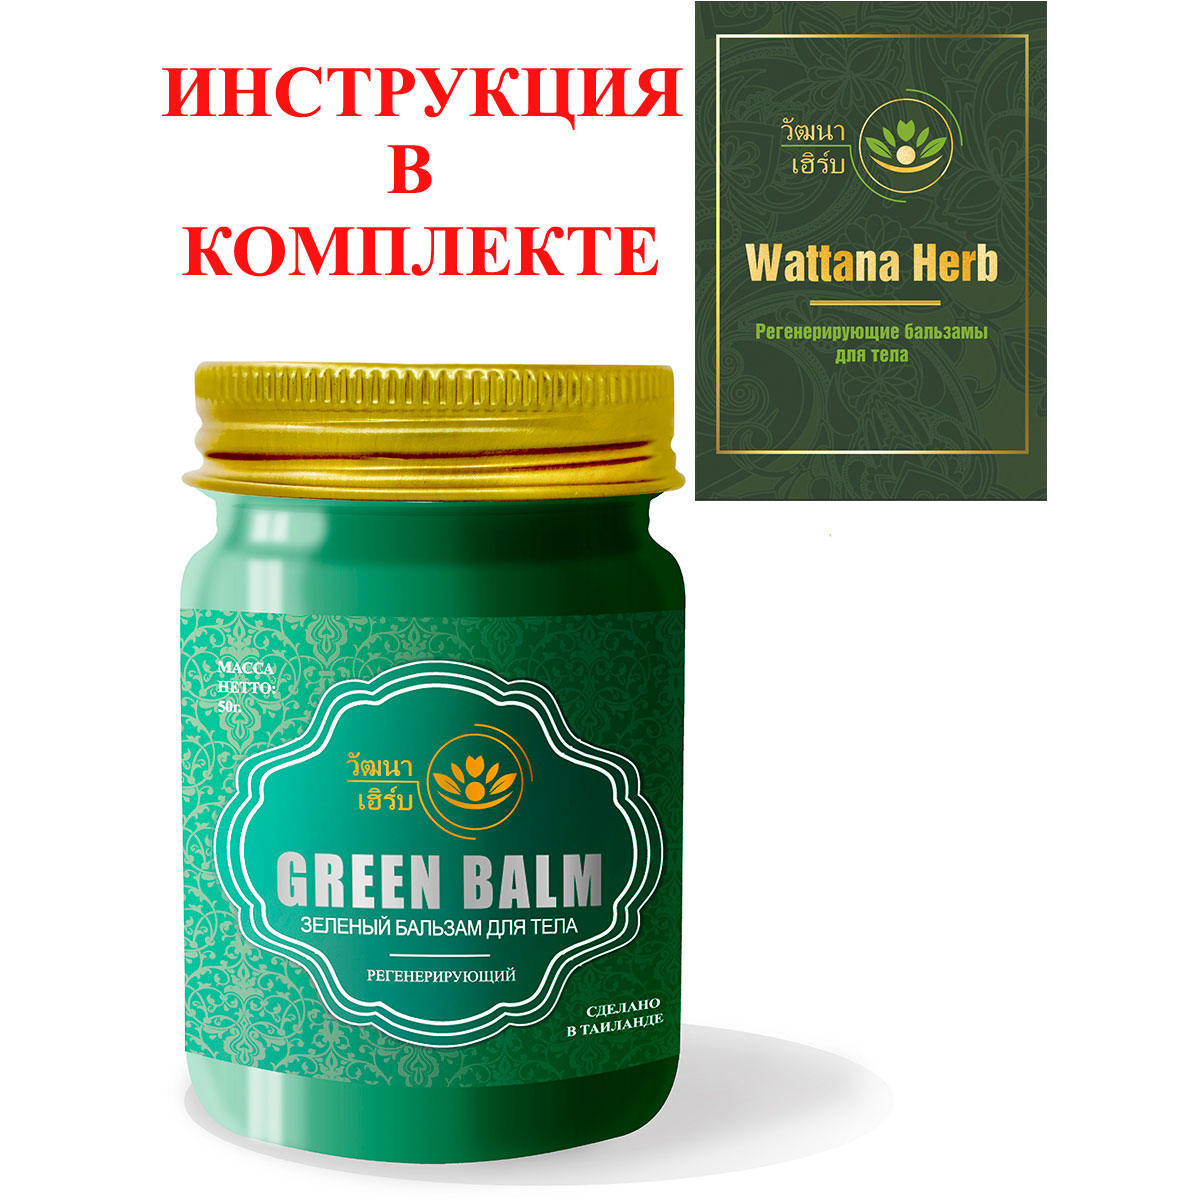 Тайский натуральный Зеленый бальзам для тела регенерирующий Wattana Herb Green Balm 50гр.